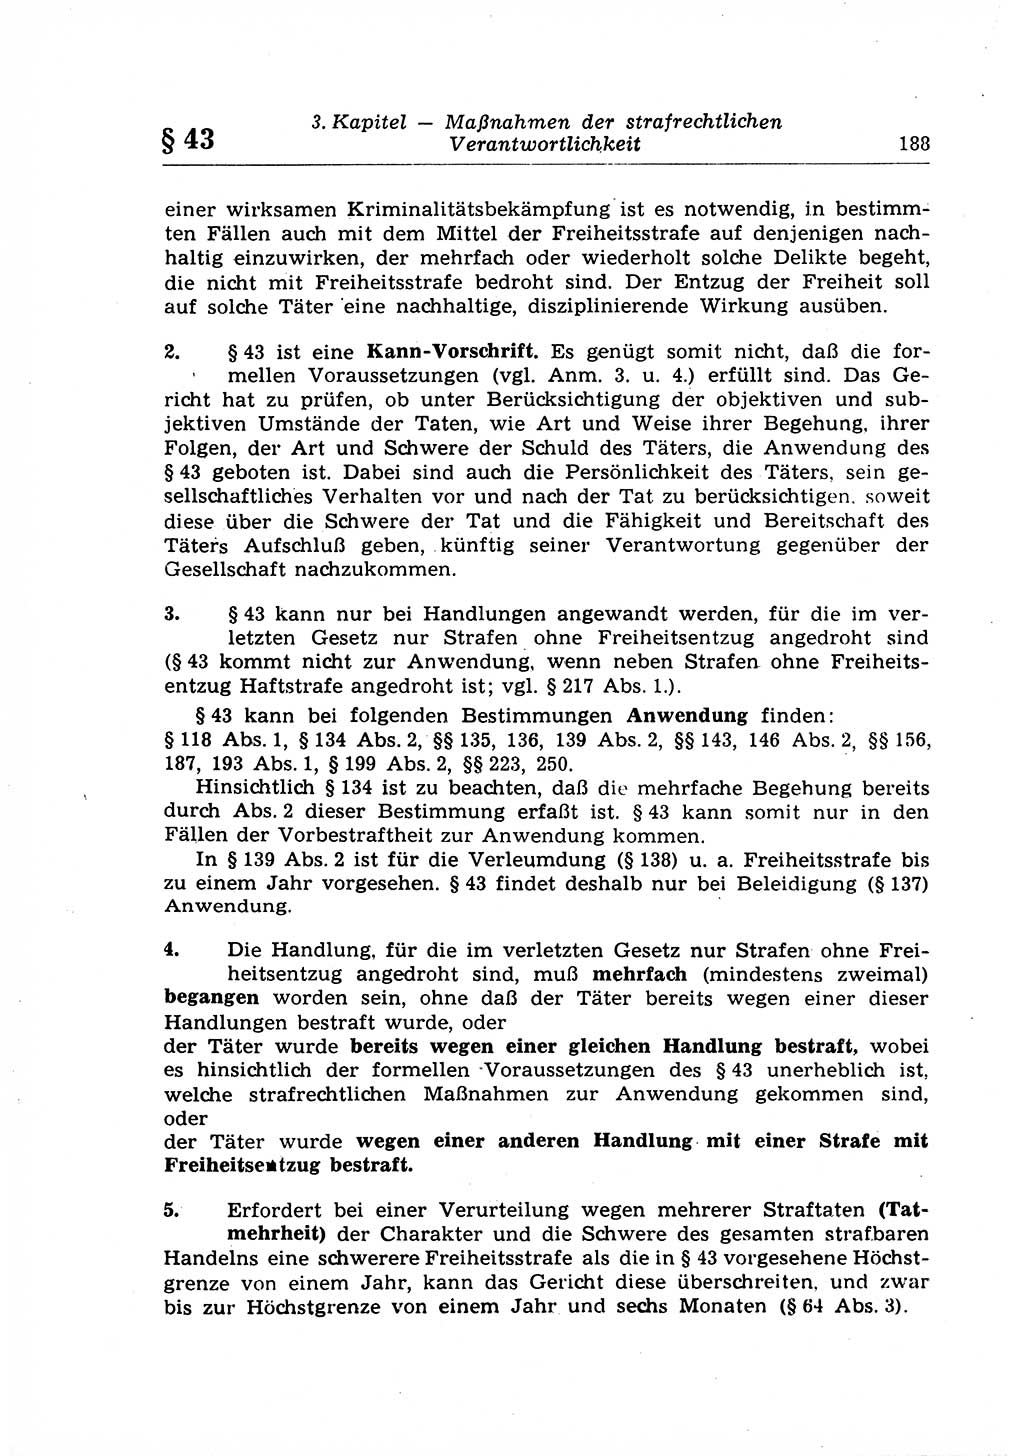 Strafrecht der Deutschen Demokratischen Republik (DDR), Lehrkommentar zum Strafgesetzbuch (StGB), Allgemeiner Teil 1969, Seite 188 (Strafr. DDR Lehrkomm. StGB AT 1969, S. 188)